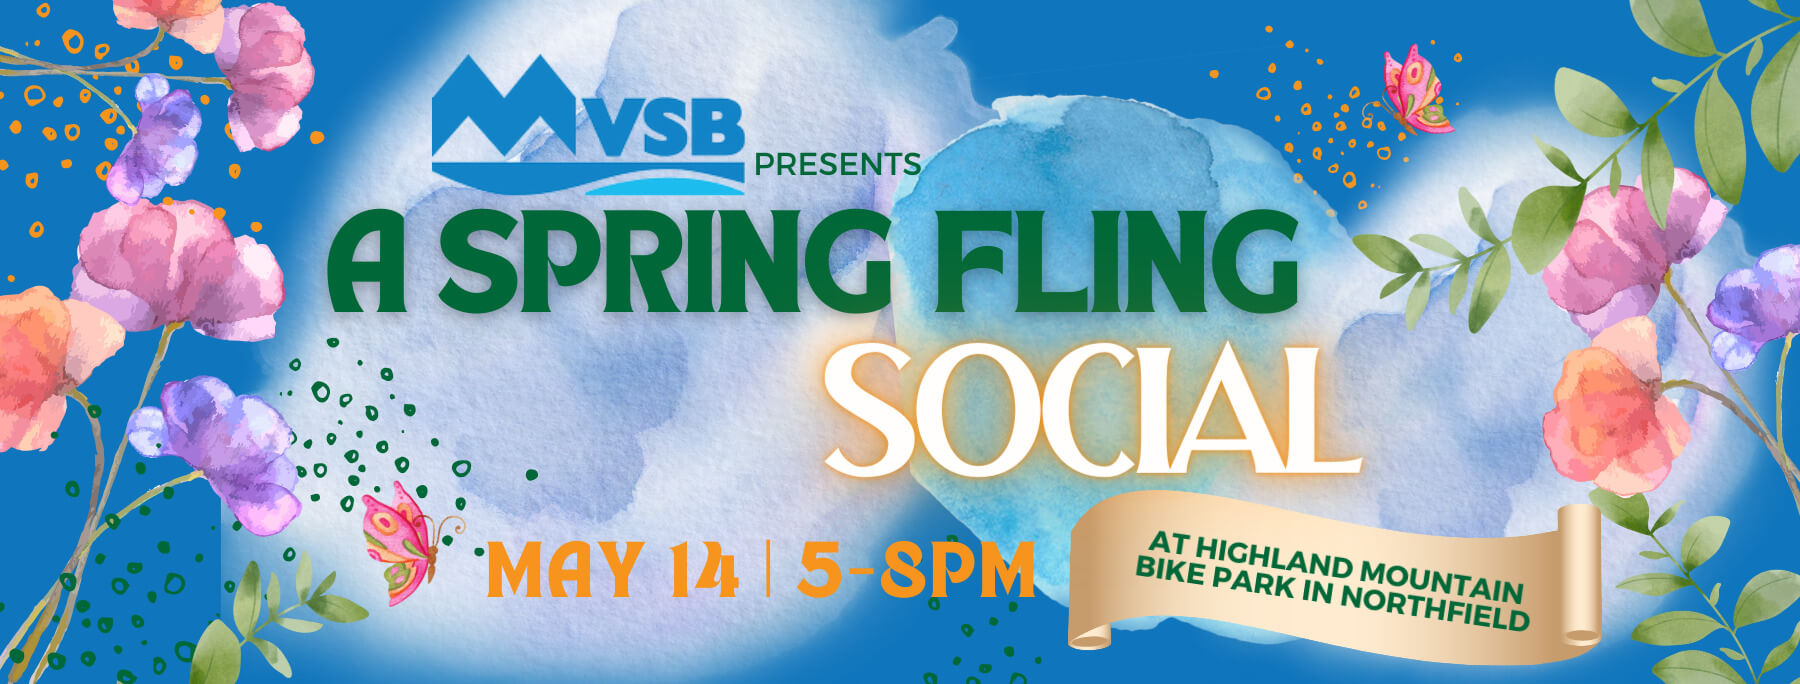 Spring Fling Social